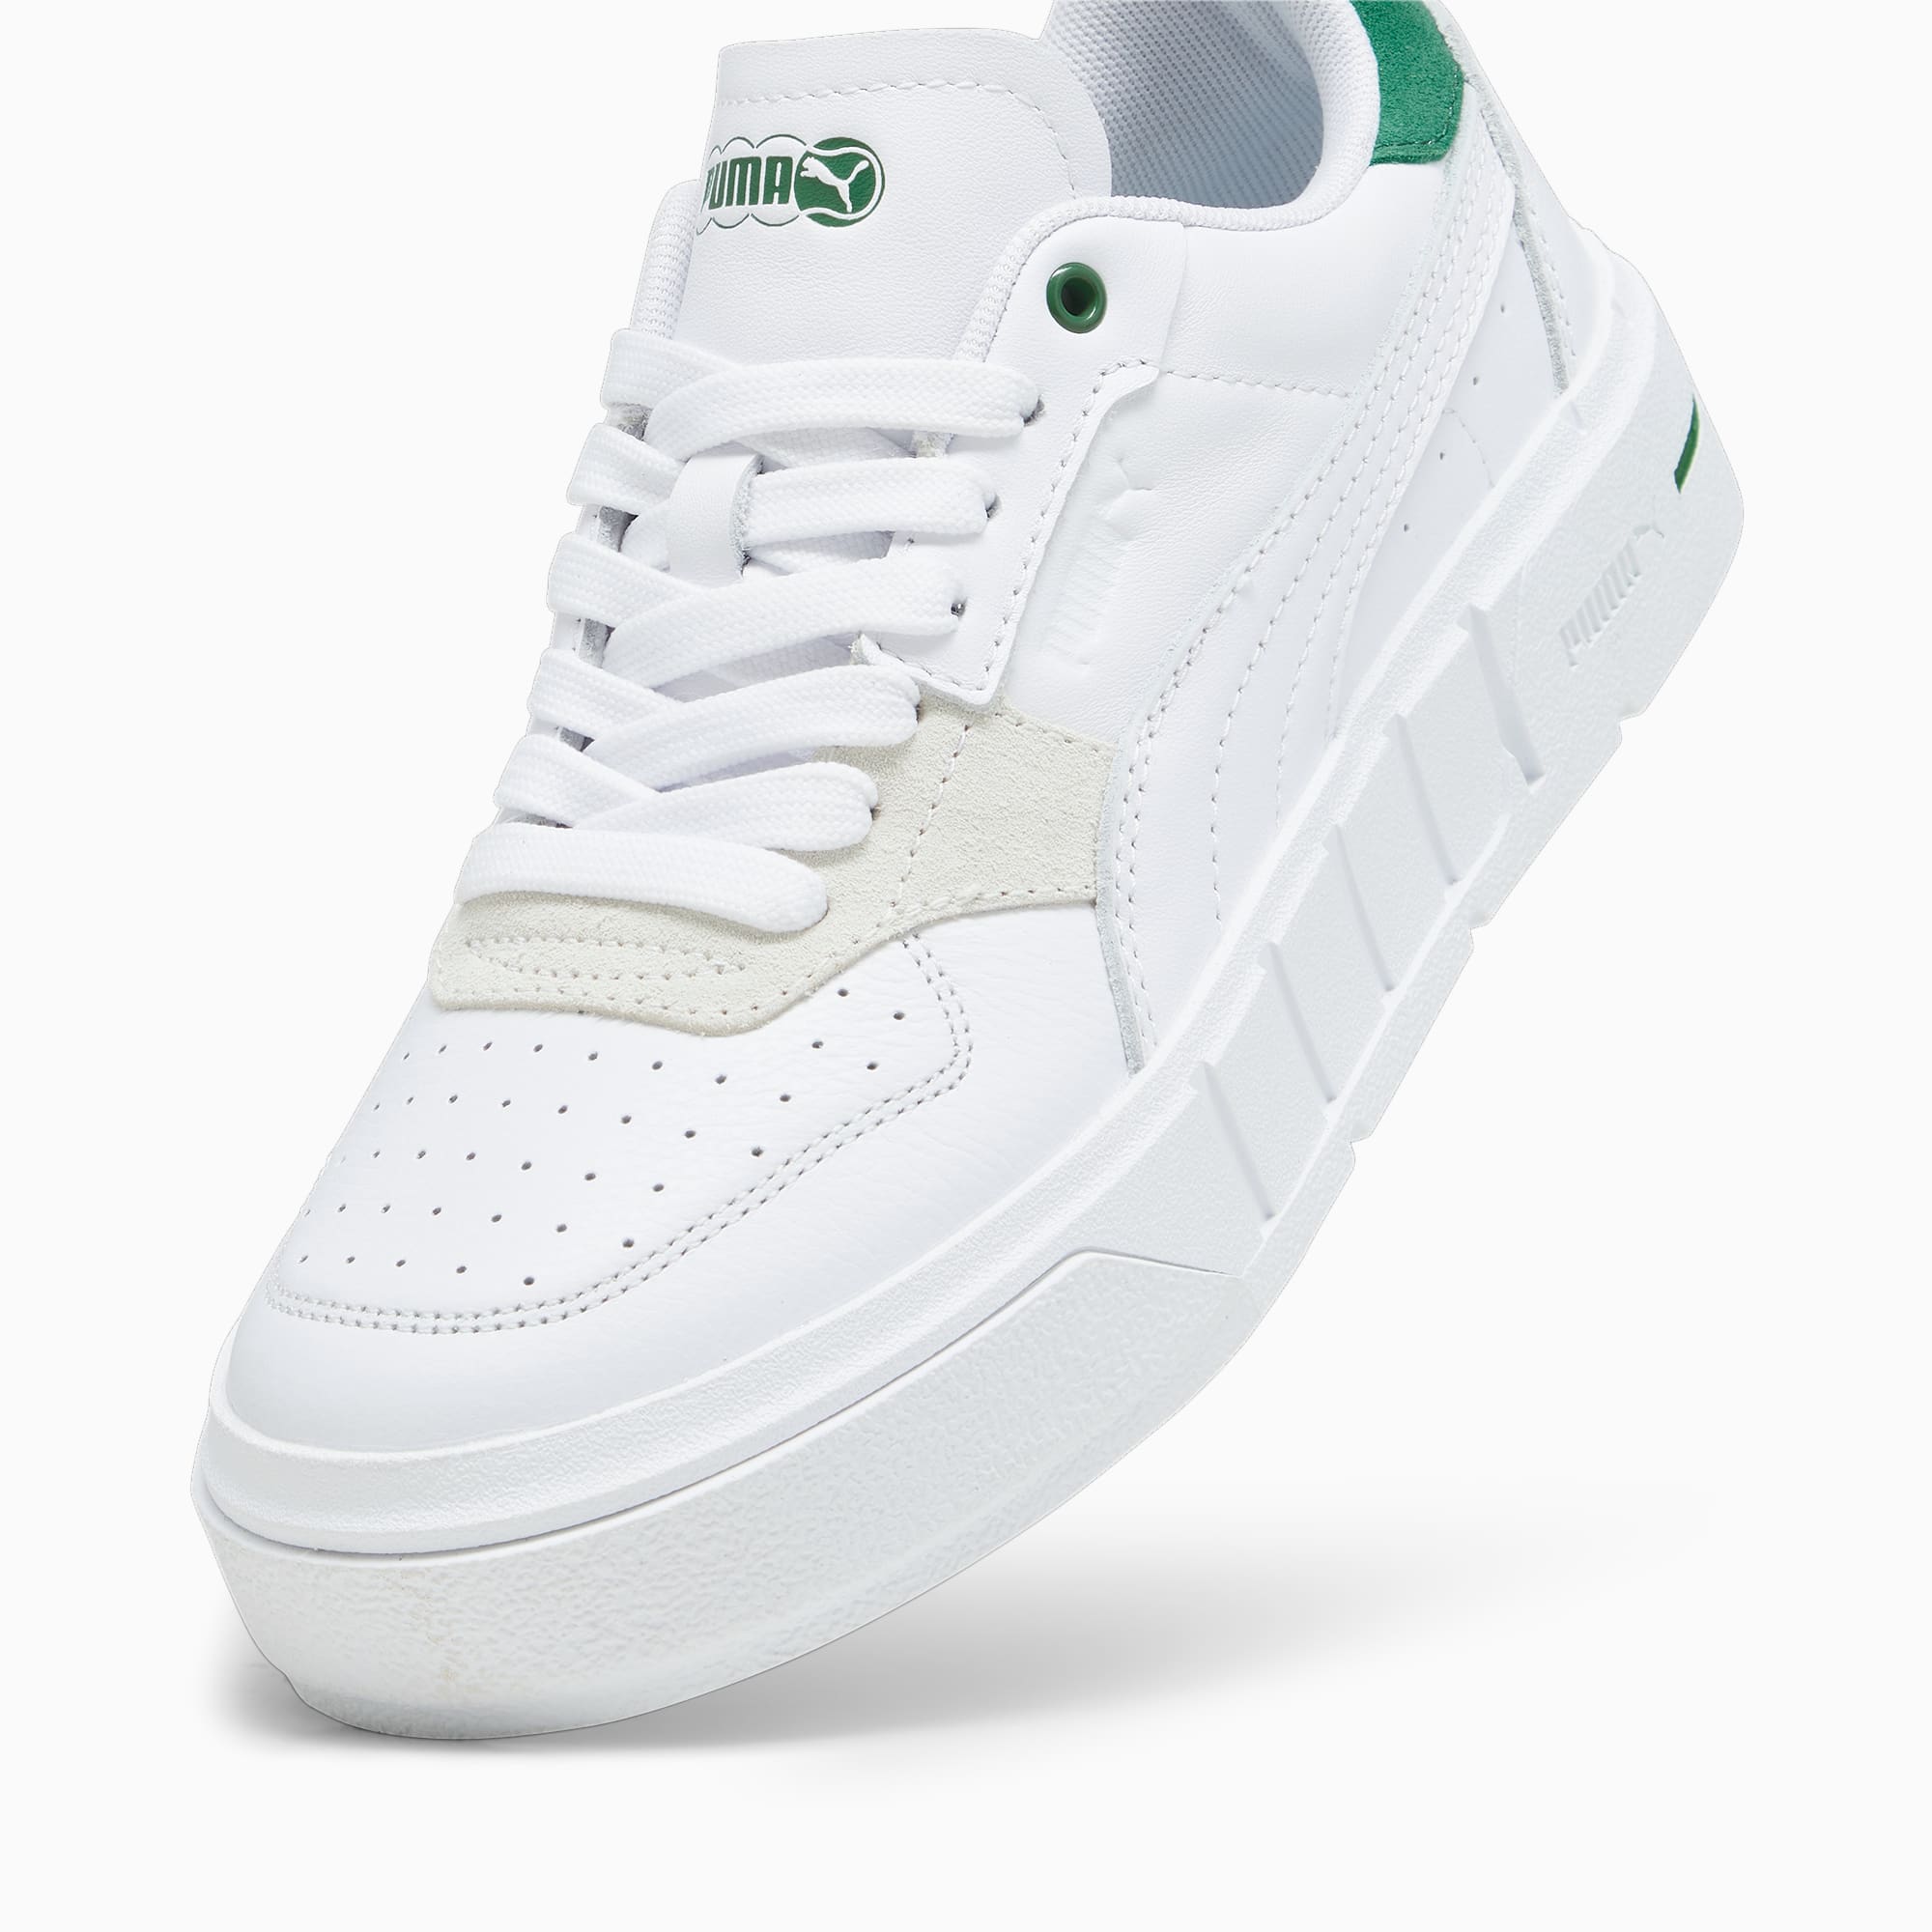 PUMA Cali Court Match Sneakers Damen Schuhe, Weiß/Grün, Größe: 35.5, Schuhe